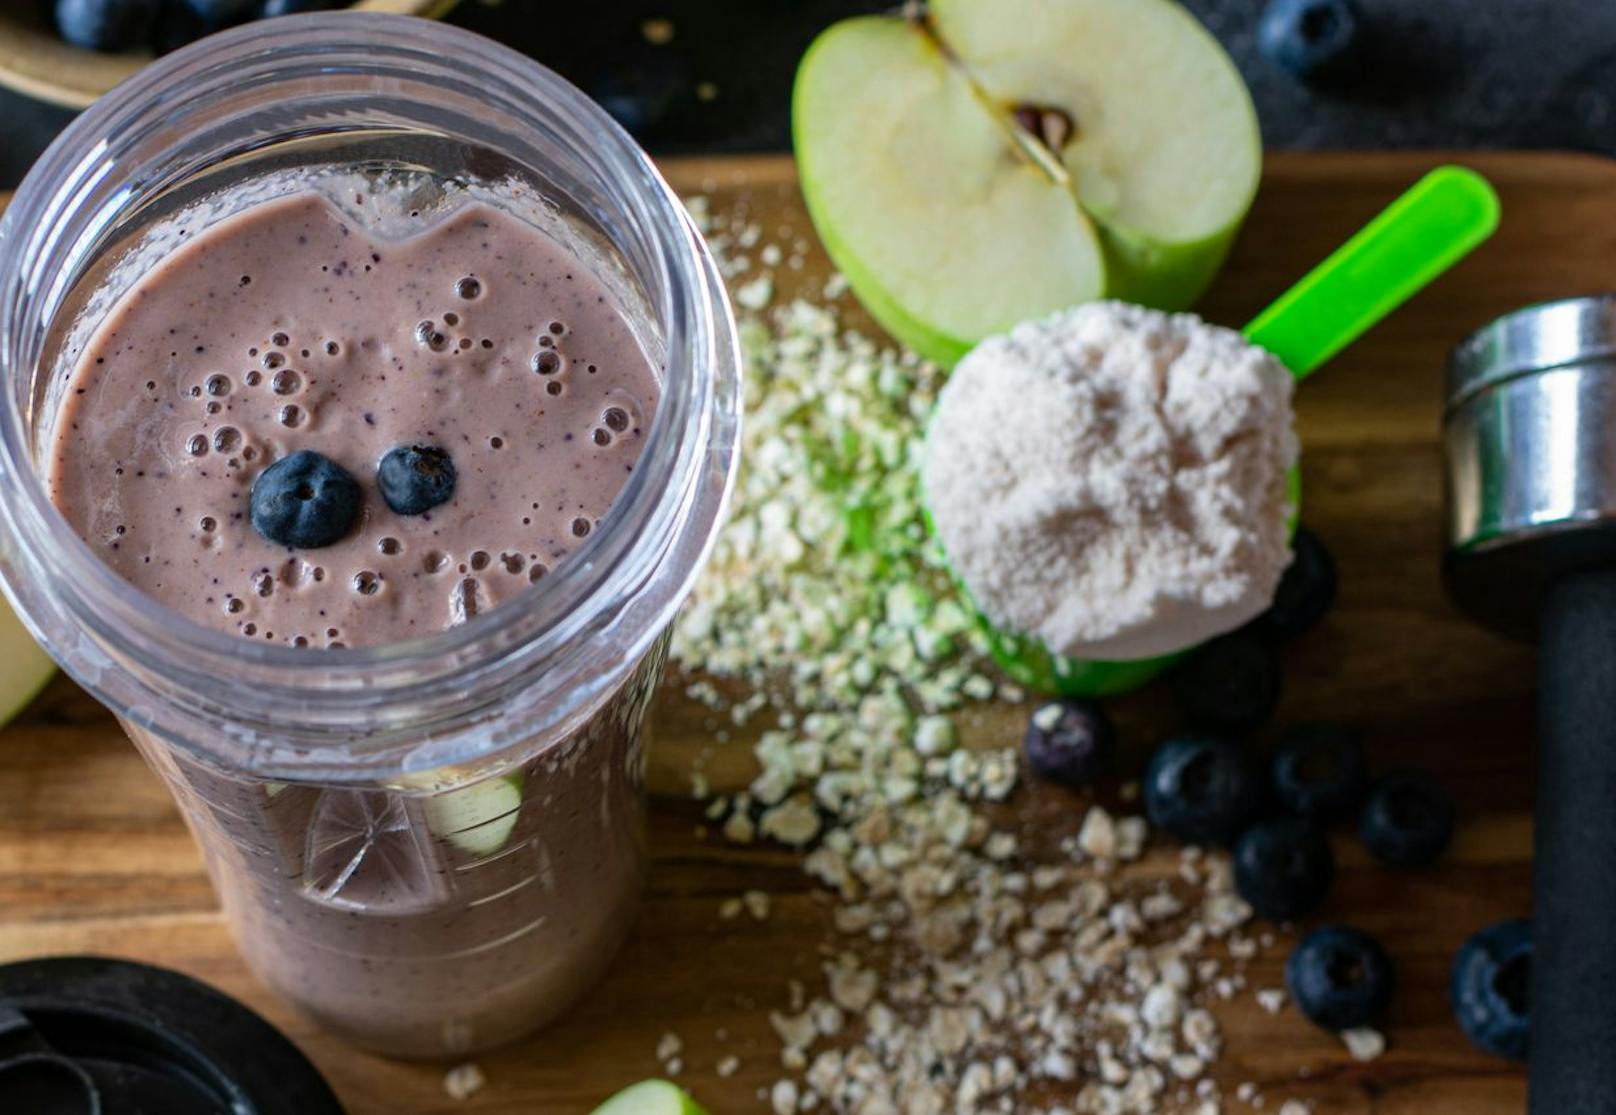 Entscheidest du dich dafür deinen eigenen Shake zu machen hilft es, wenn frische Früchte zur Verwendung kommen. Diese versorgen deinen Körper mit den richtigen Vitaminen und auch natürlichen Süßstoffen. Deinen Proteingehalt kannst du etwa mit der Hilfe von einem Proteinjoghurt decken.  